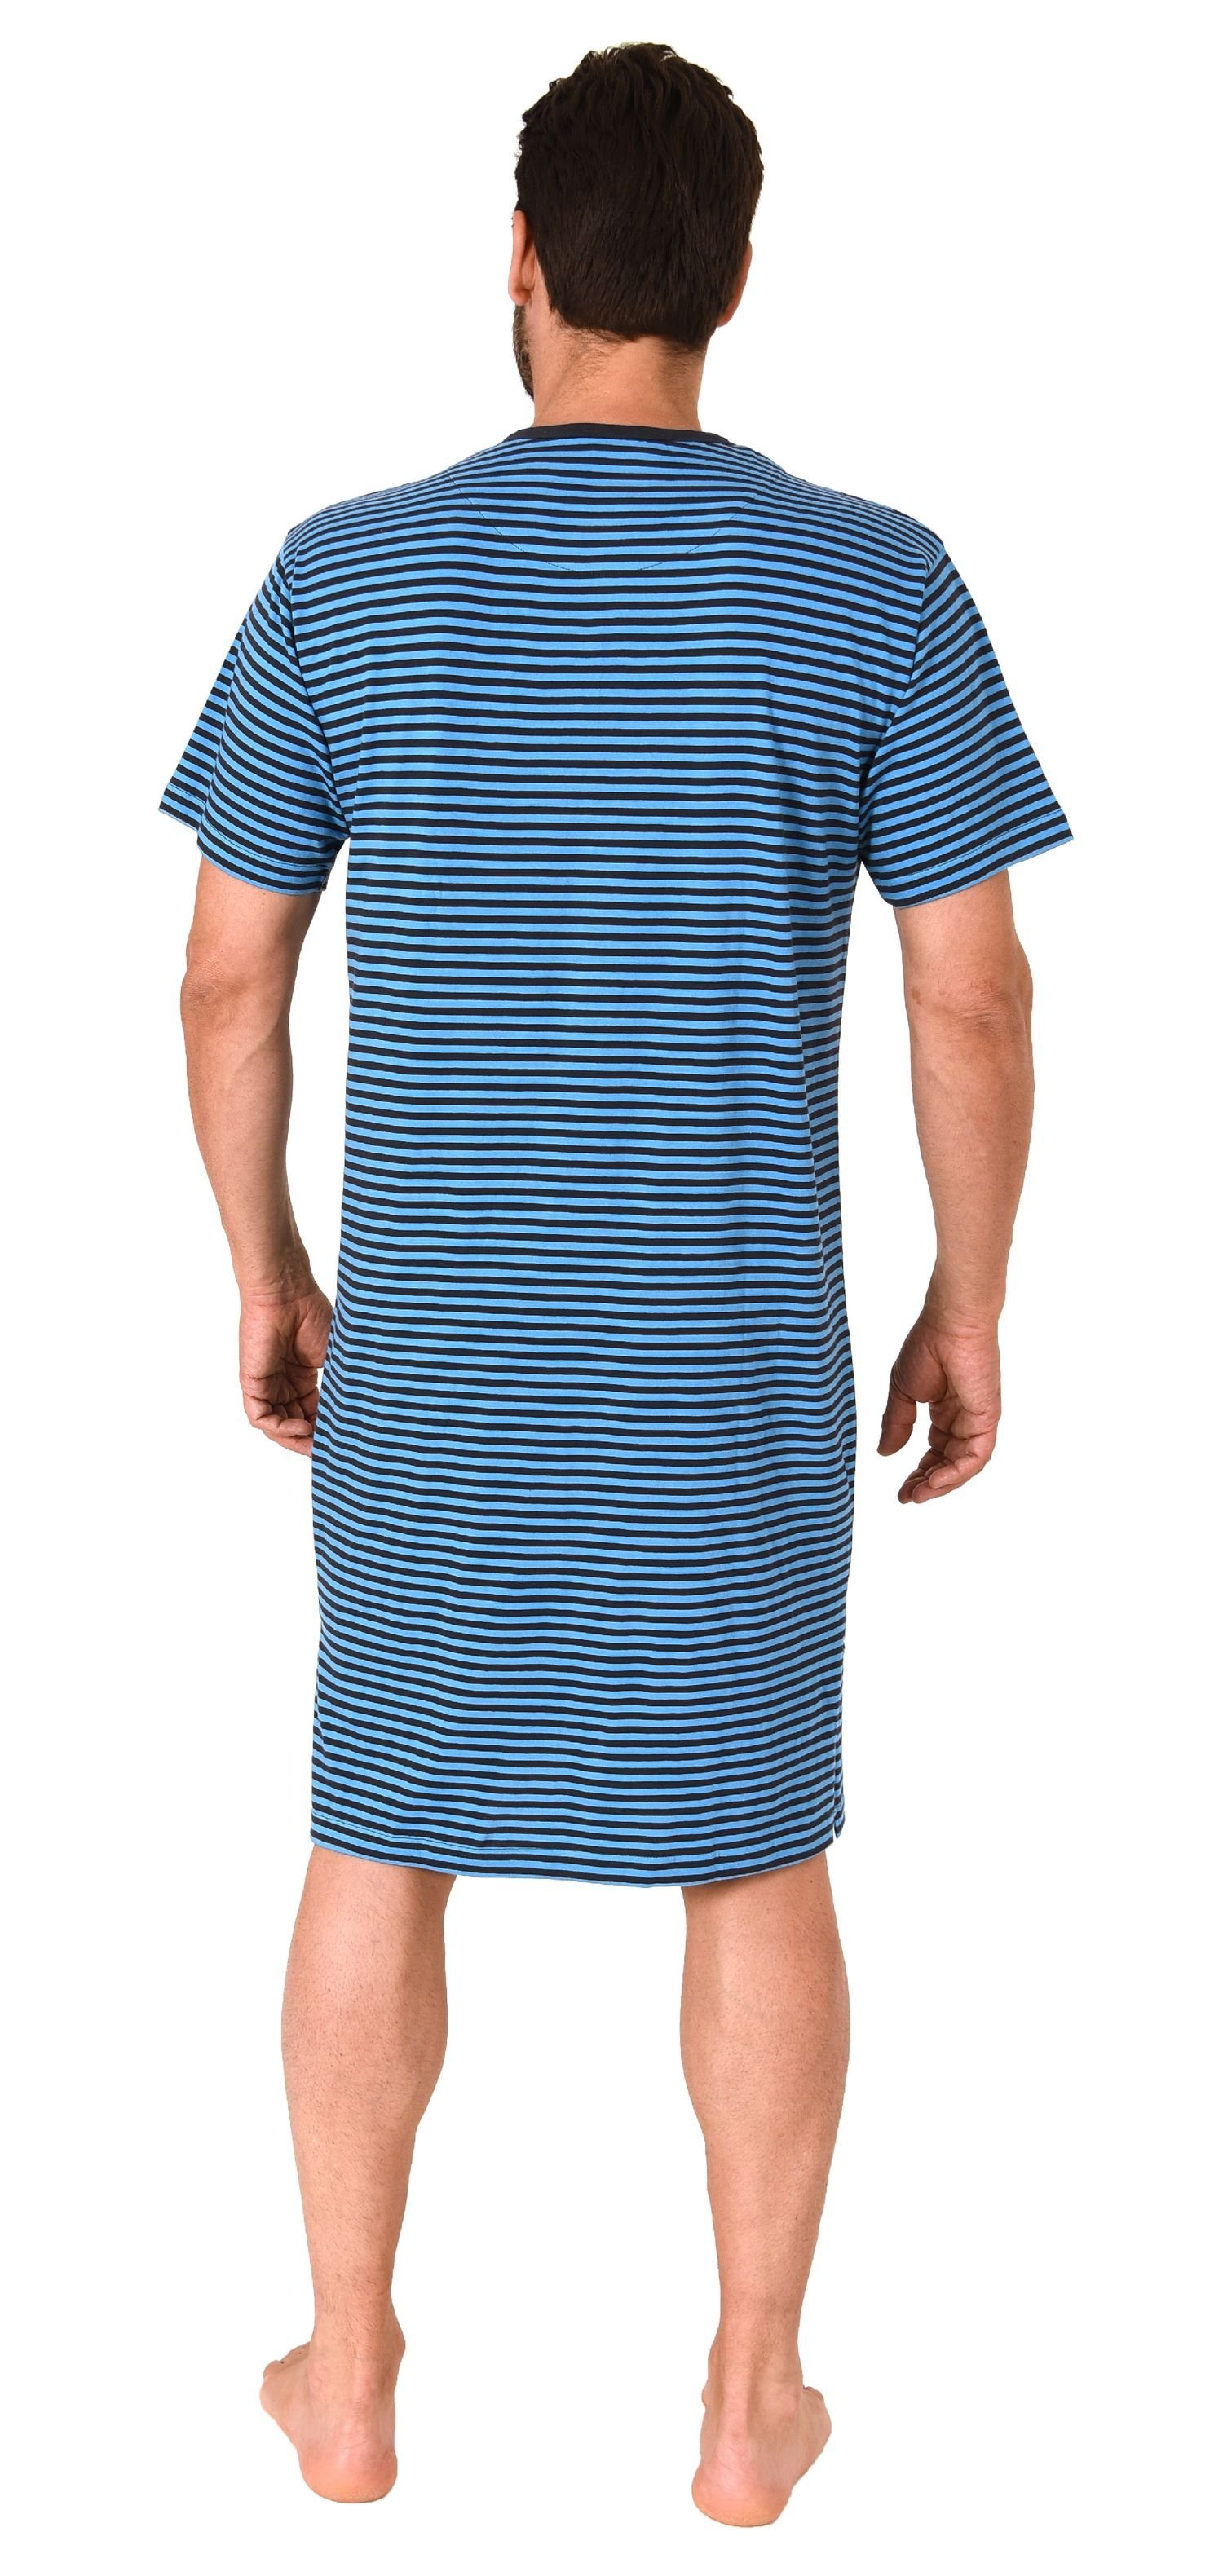 Wäsche/Bademode Nachtwäsche Normann Pyjama Herren kurzarm Nachthemd in Streifenoptik - 122 111 90 504